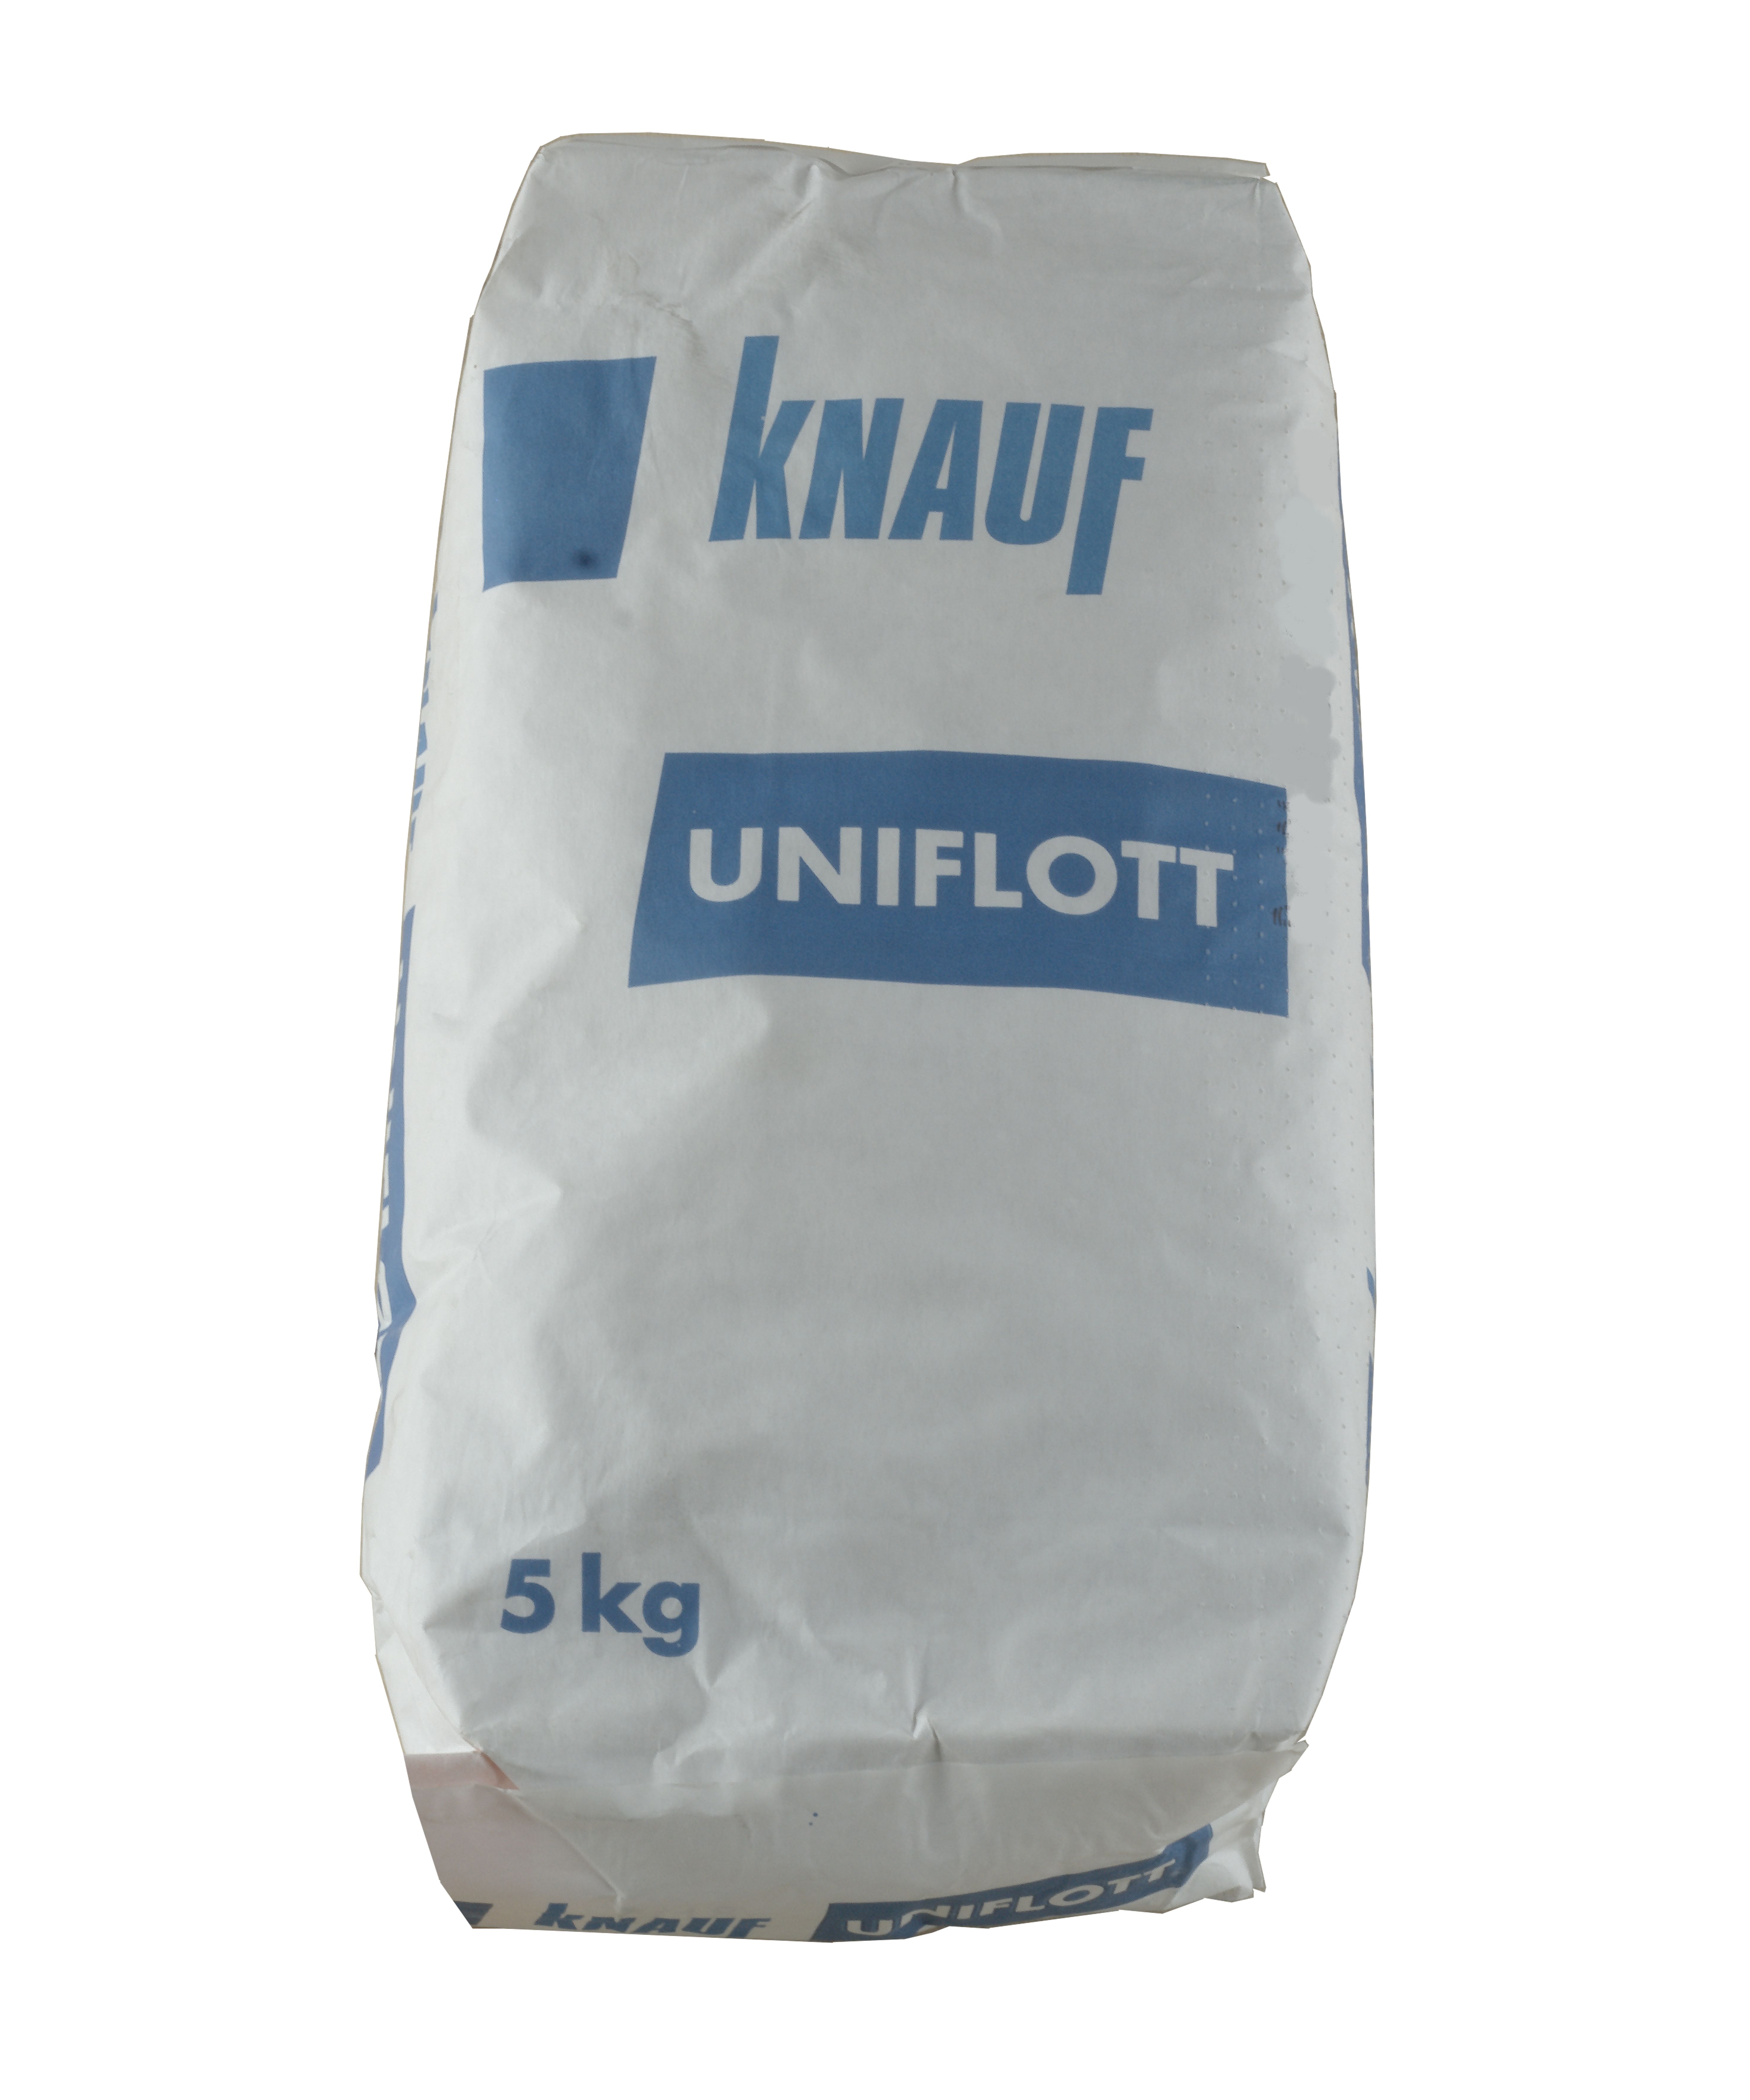 Knauf Uniflott   lose in kg